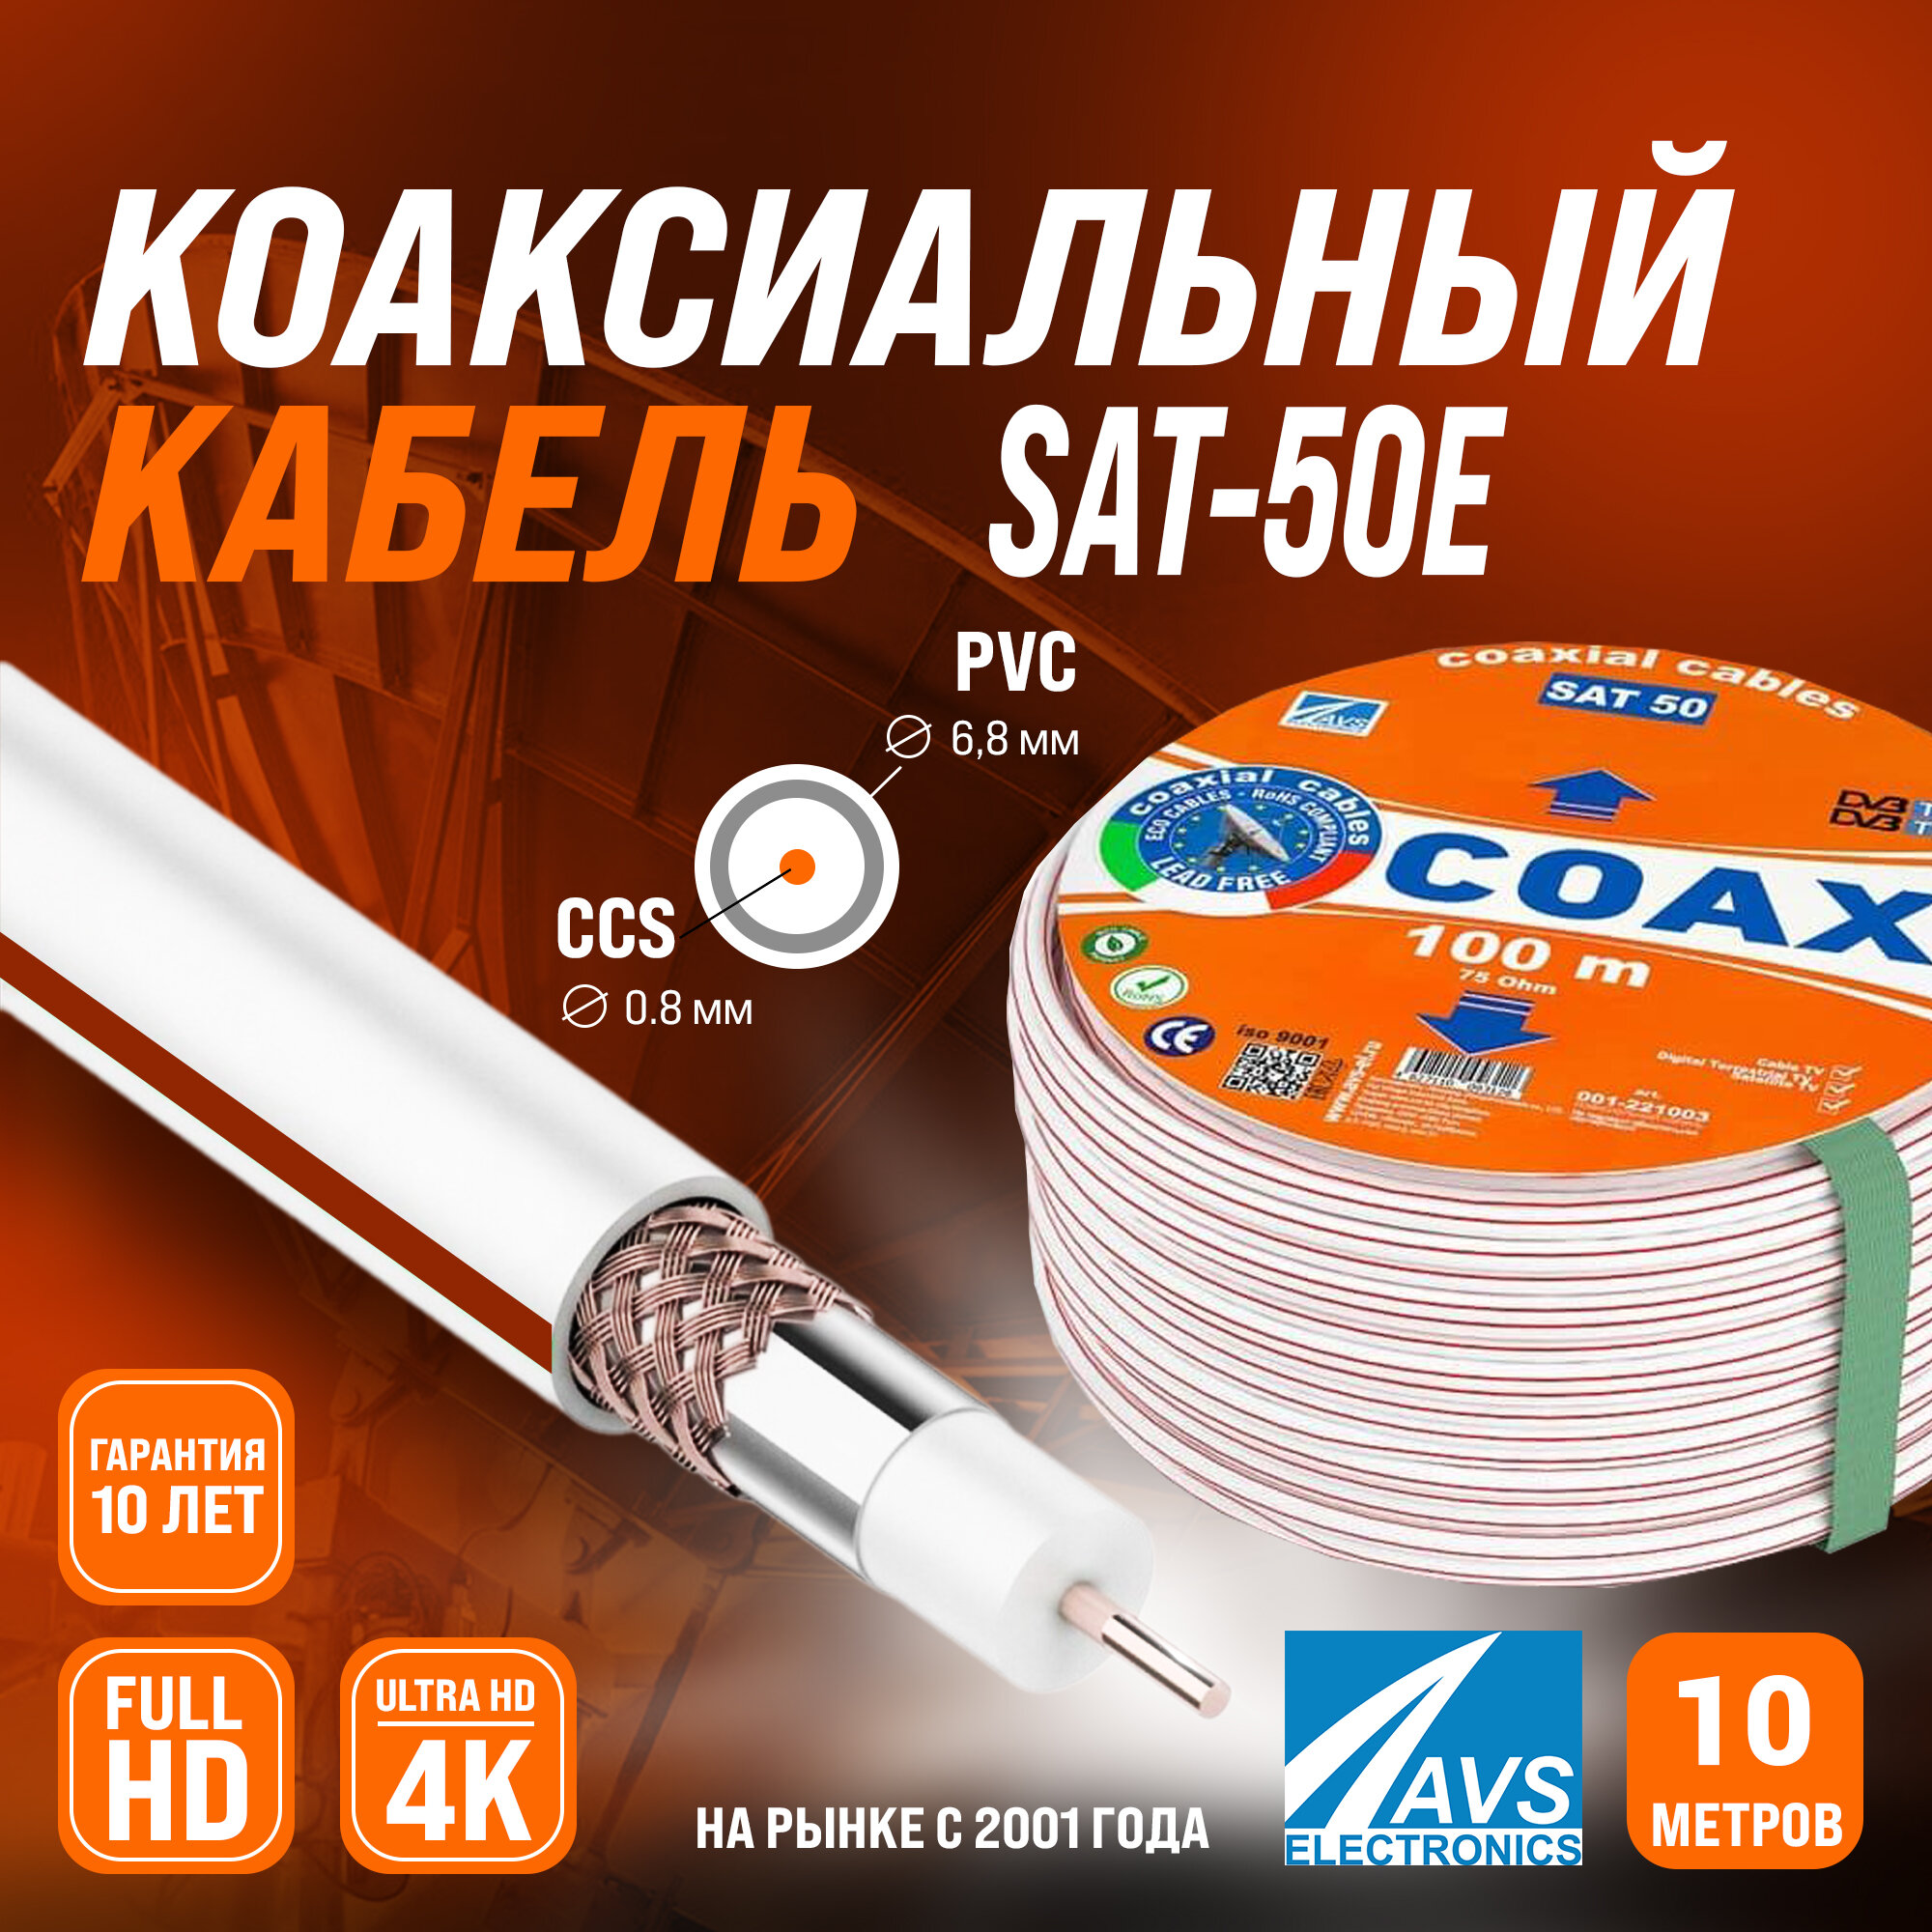 Коаксиальный телевизионный кабель 10 м SAT 50E CCS AVS Electronics внутренний антенный провод для цифрового, спутникового, эфирного тв 10 метров 001-221001/10